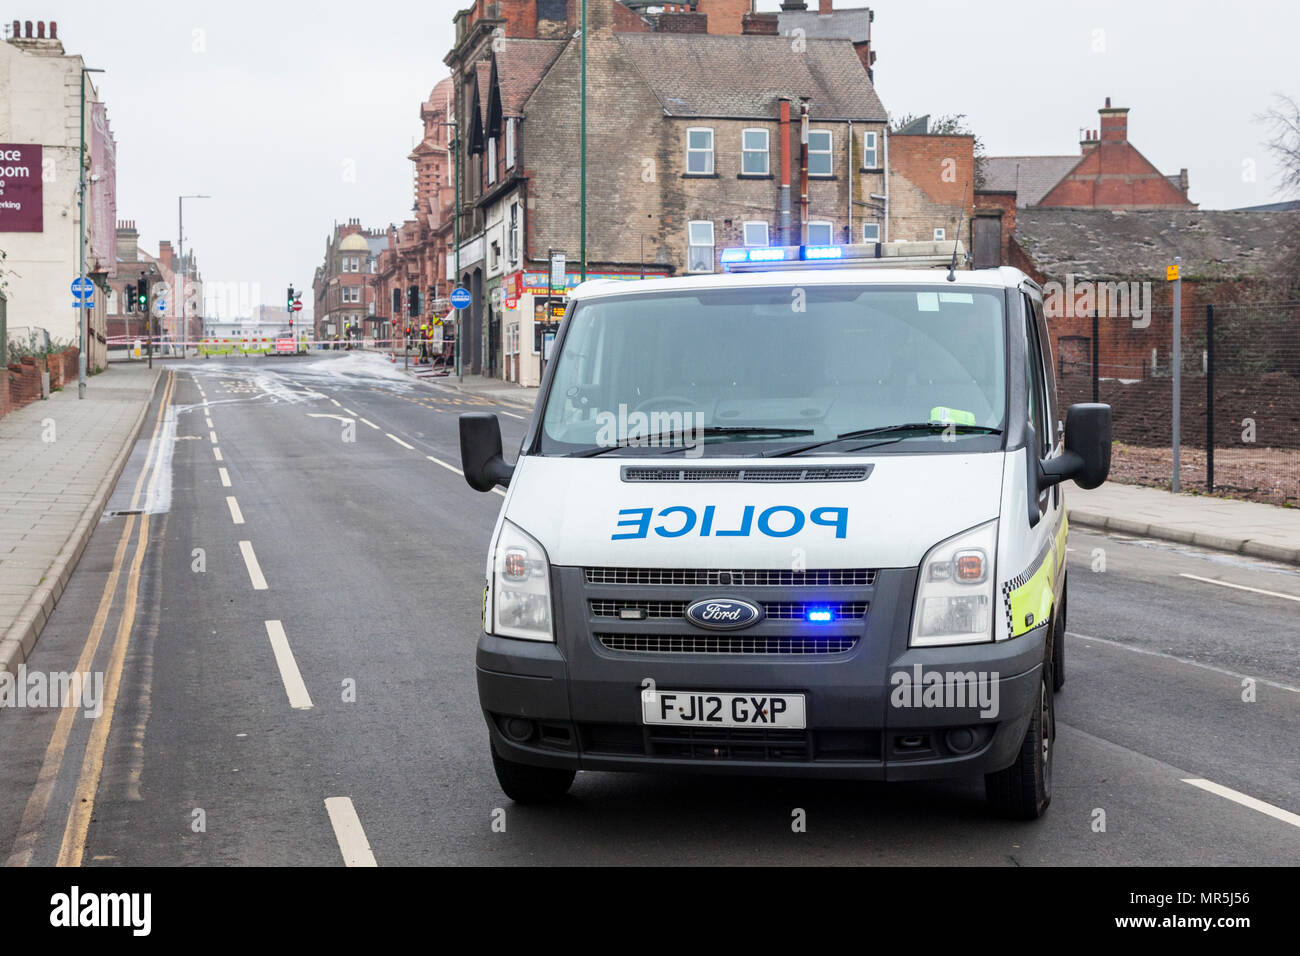 Police vehicle blocking a road, Nottingham, England, UK Stock Photo